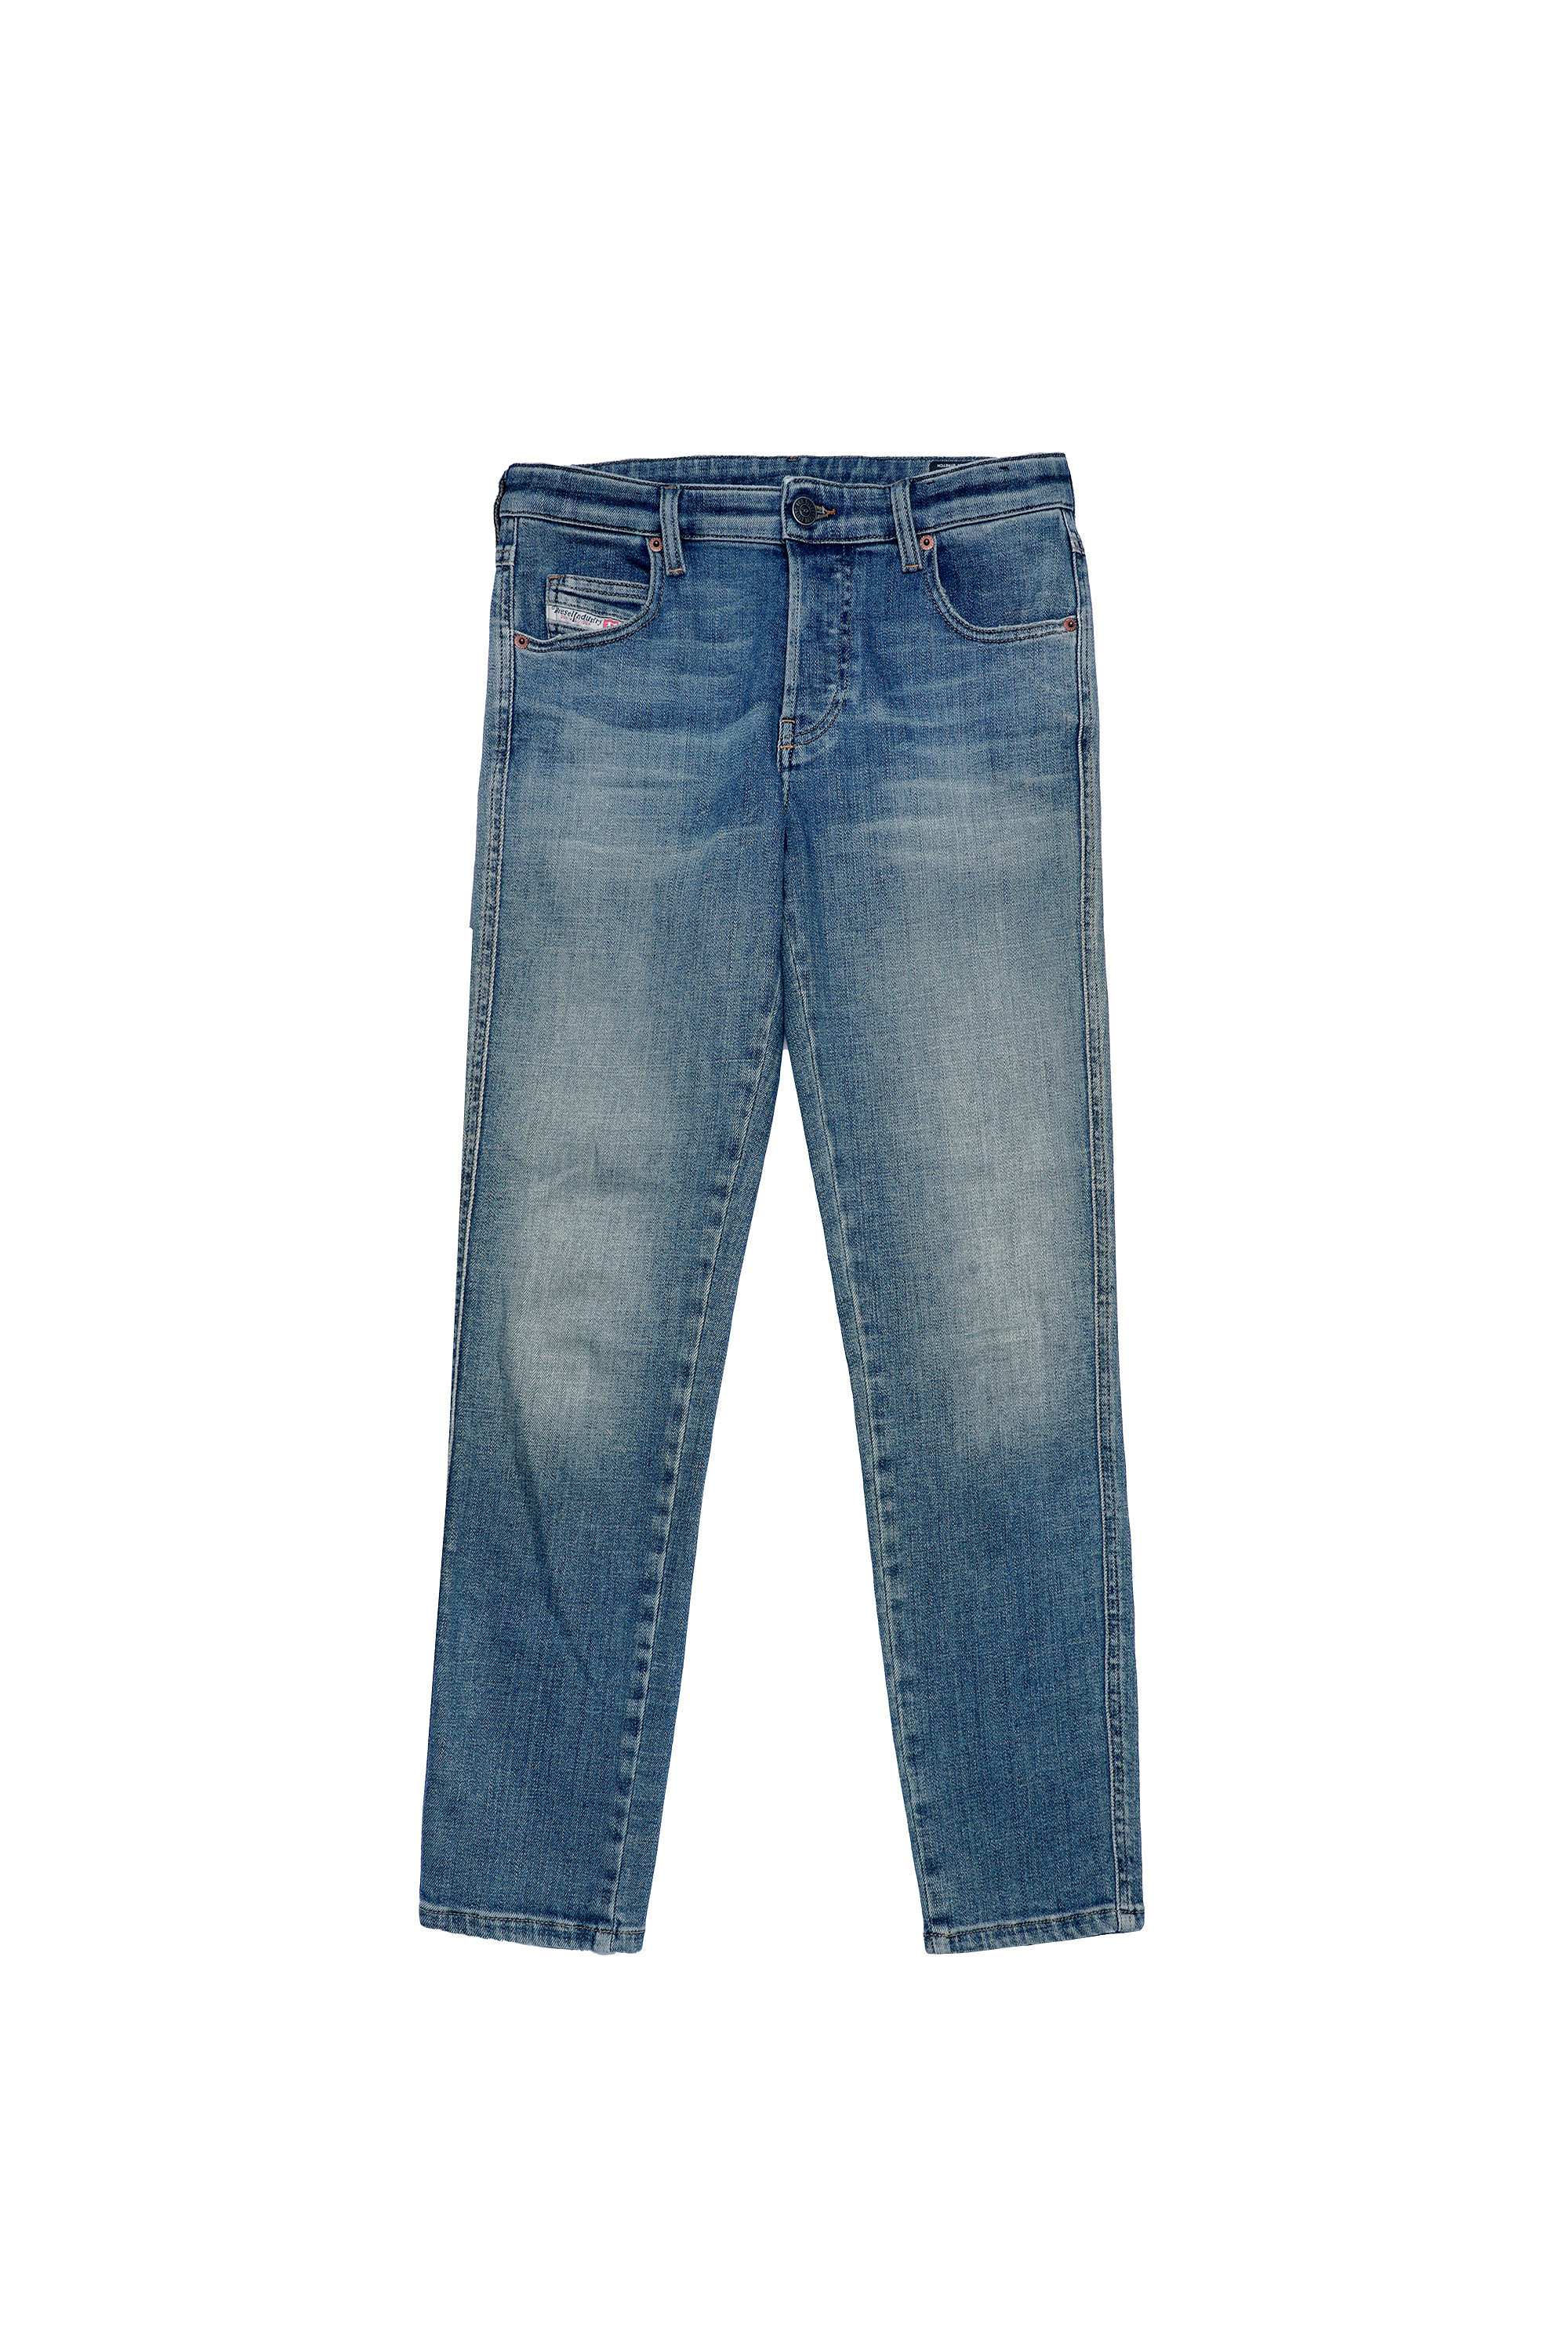 Diesel - Babhila Slim Jeans 09A01,  - Image 6